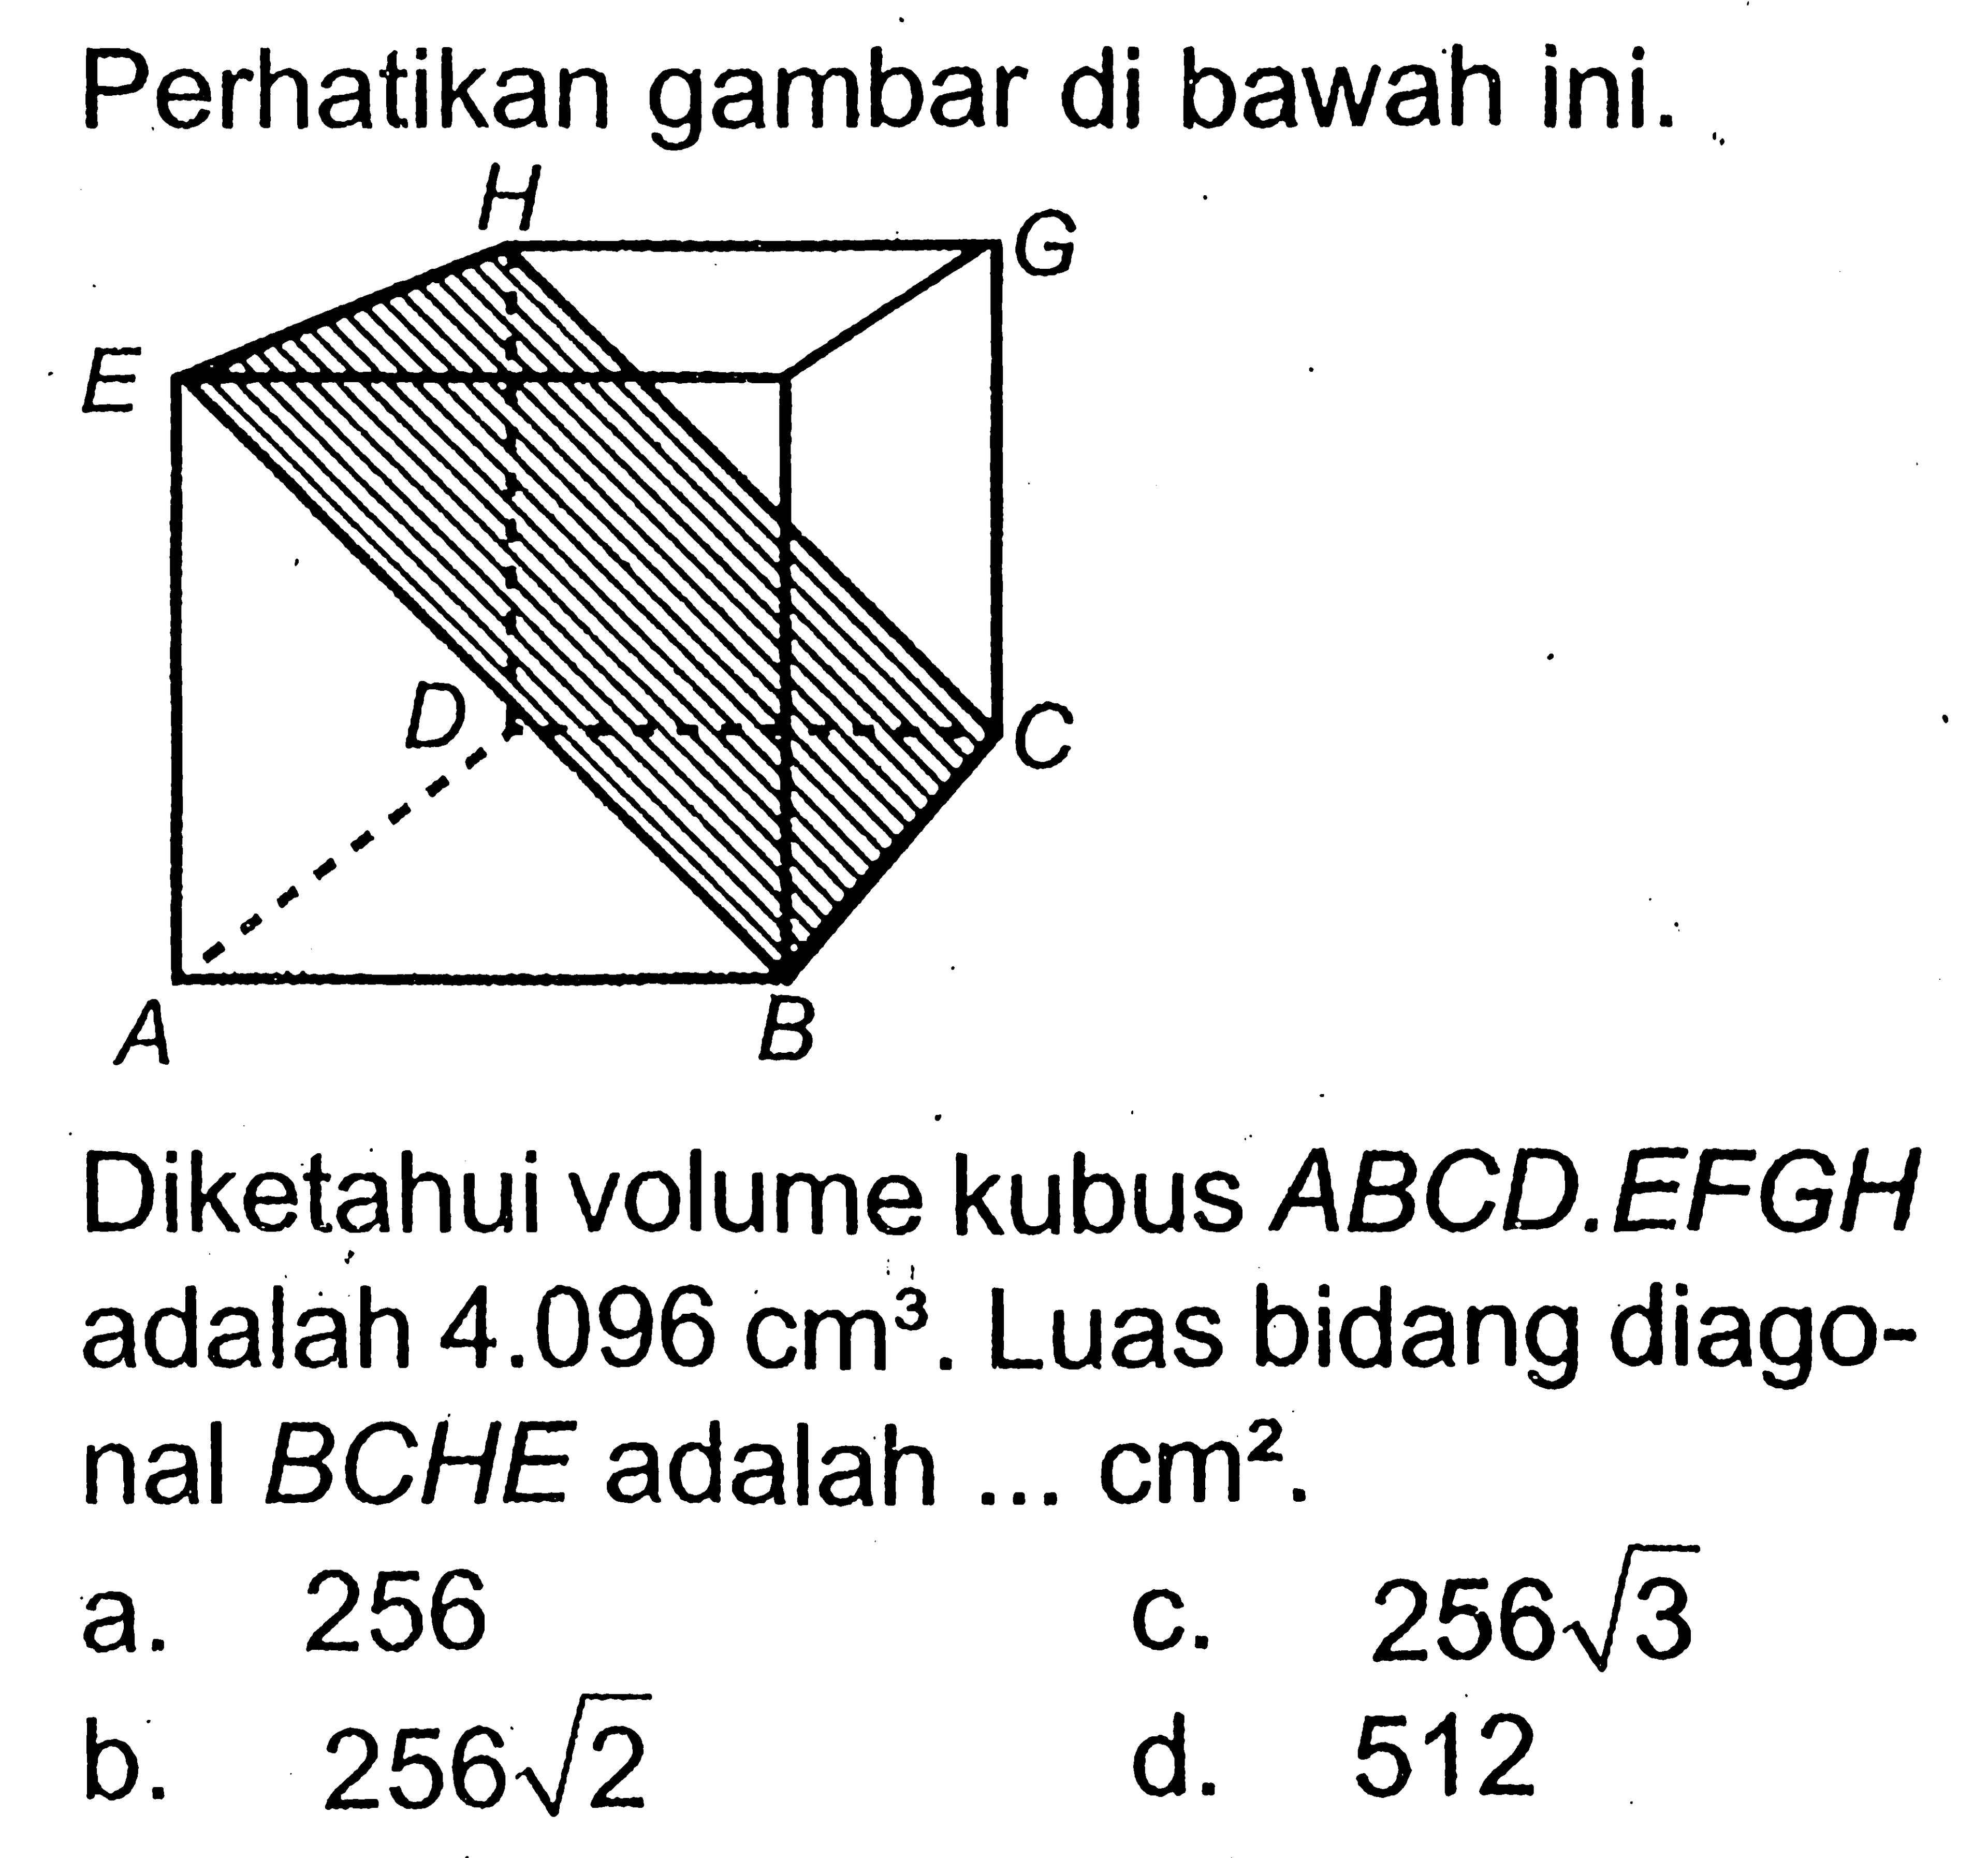 Perhatikan gambar di bawah ini. H A G D C A B.Diketahui volume kubus  ABCD.EFGH  adalah  4.096cm^3 . Luas bidang diagonal  BCHE  adalah  ...cm^2.